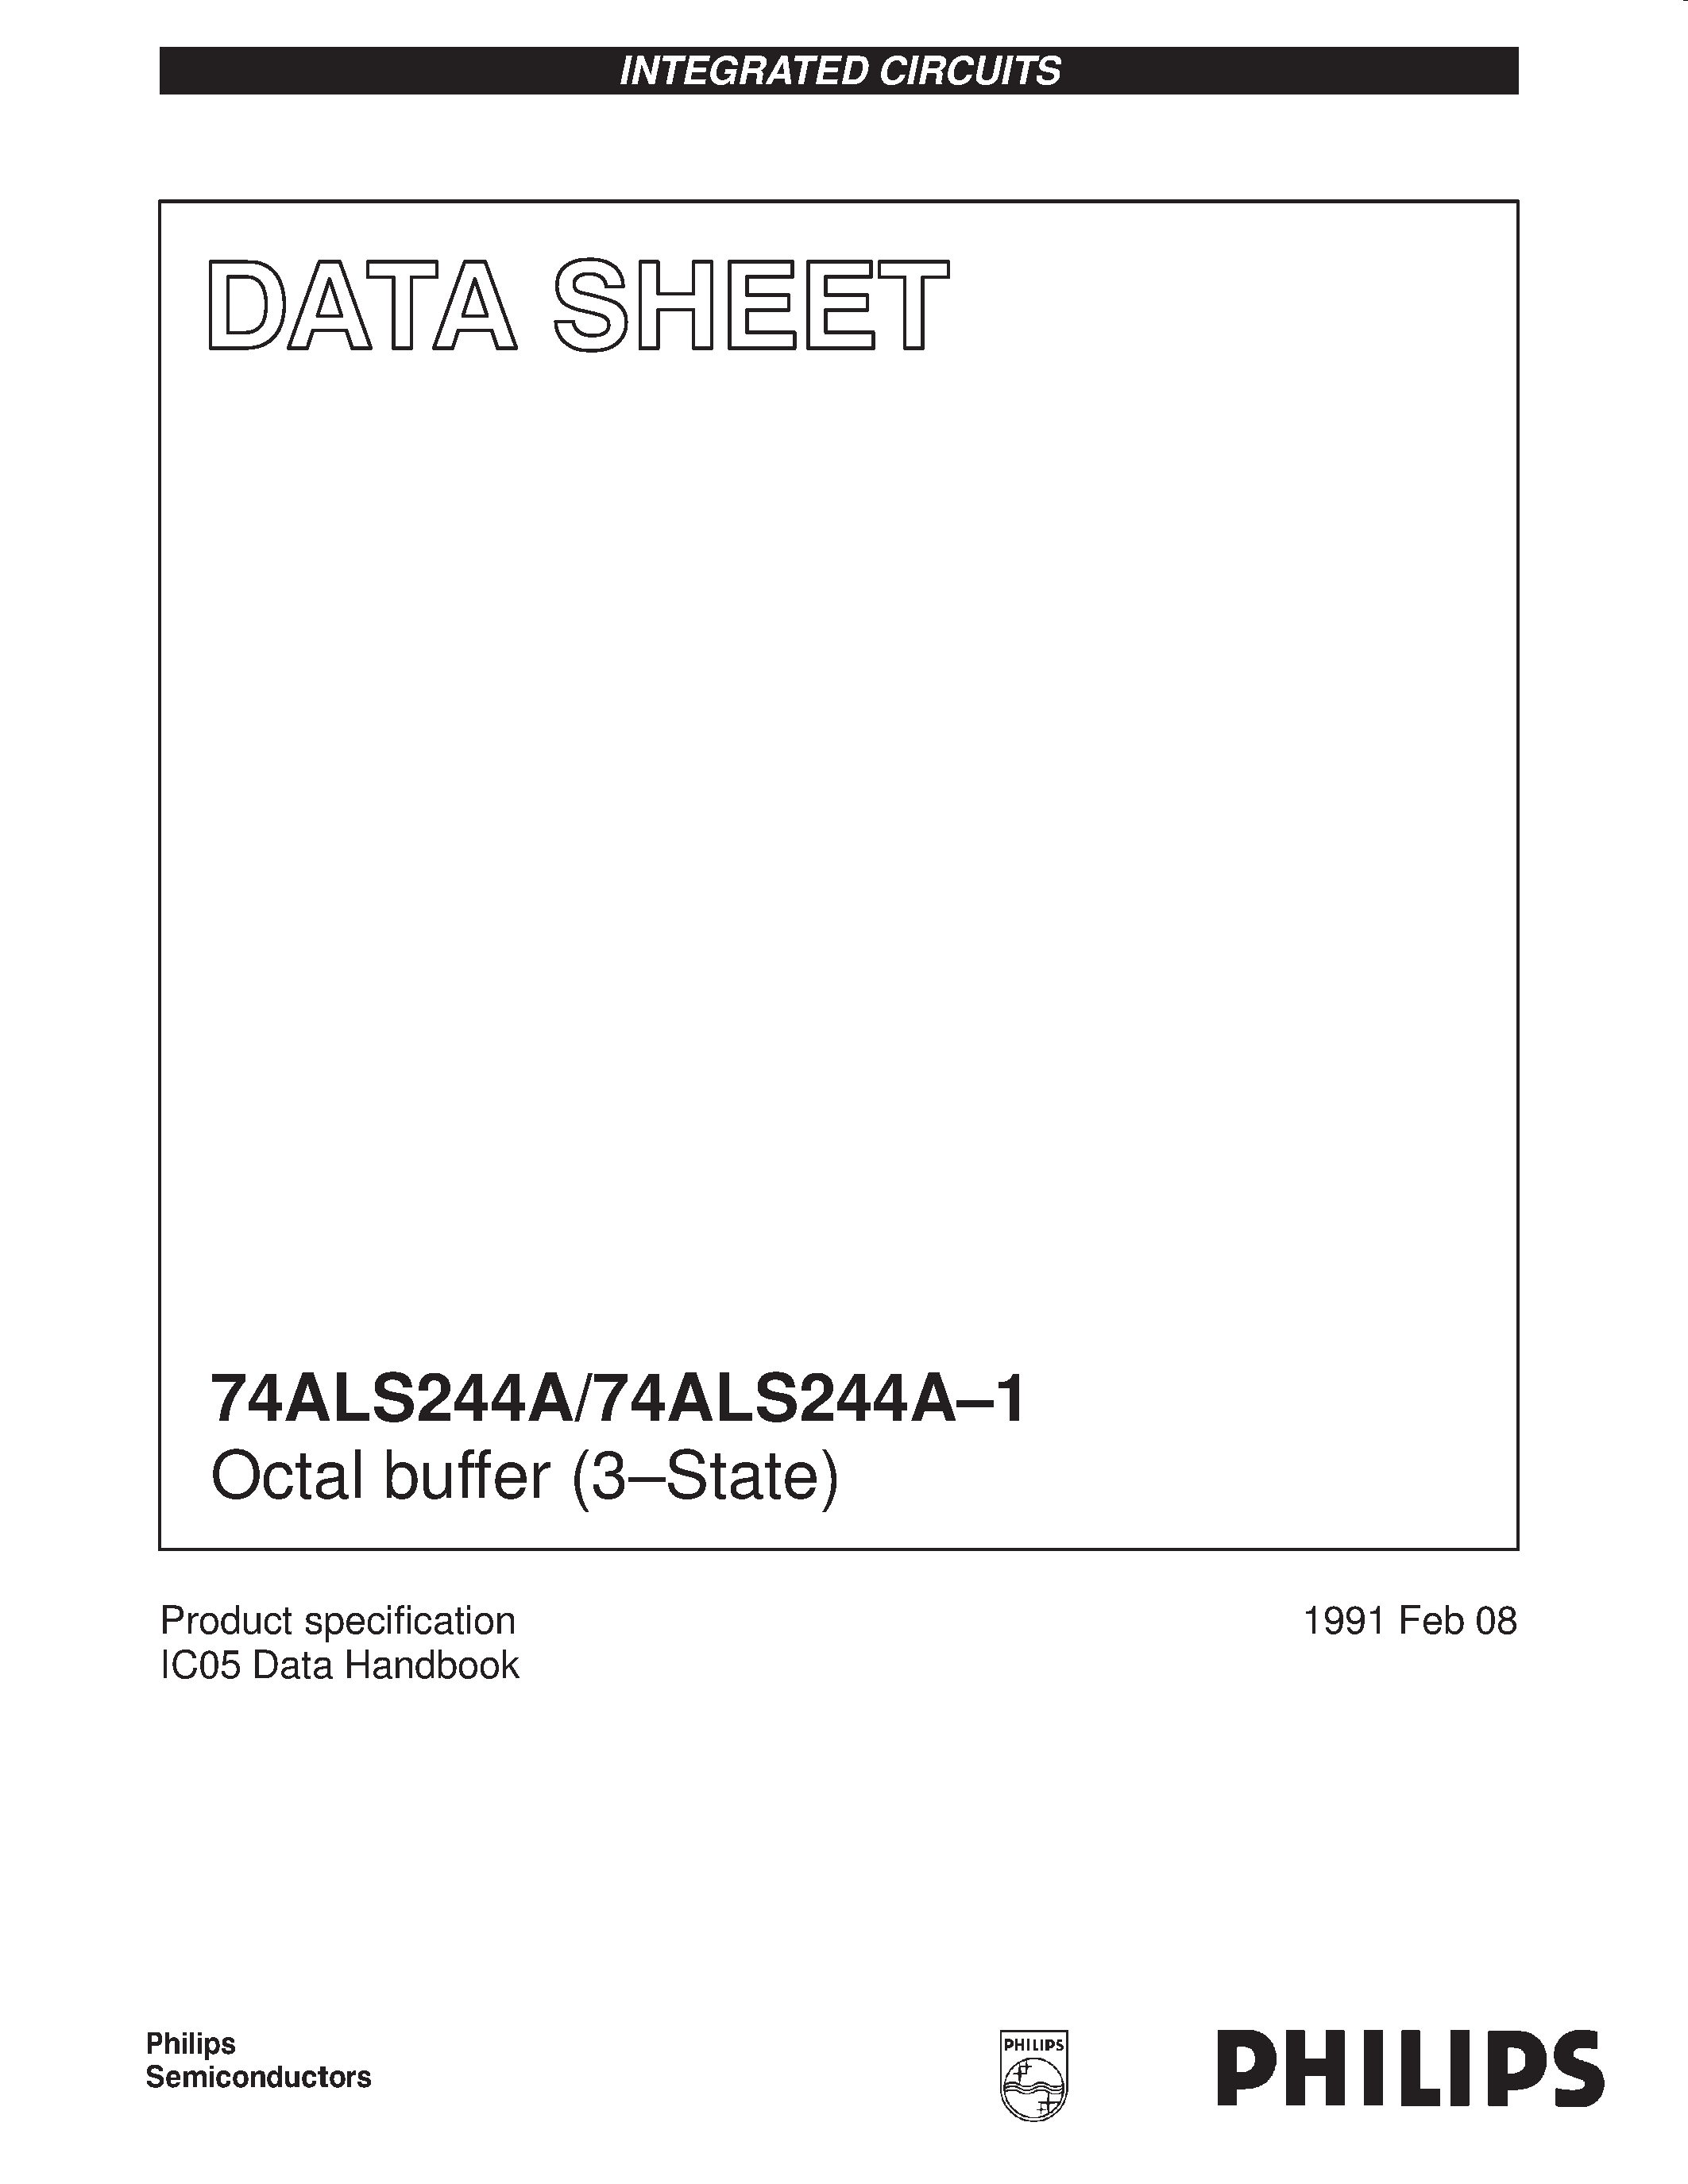 Datasheet 744ALS244A-1D - Octal buffer 3-State page 1